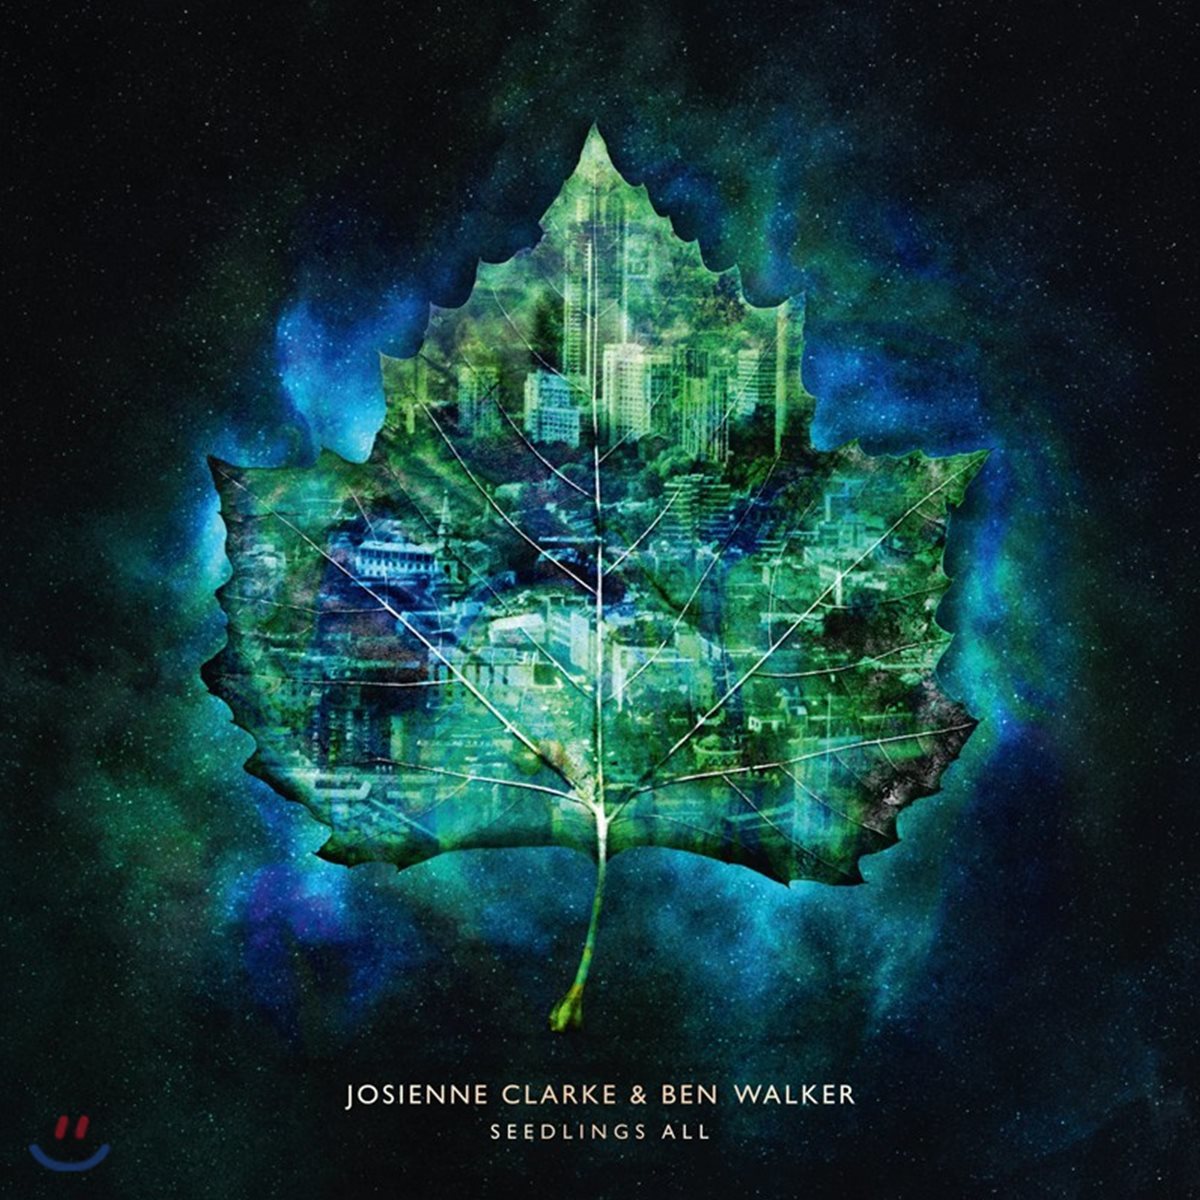 Josienne Clarke & Ben Walker (조시엔 클라크 앤 벤 워커) - Seedlings All [LP+CD]